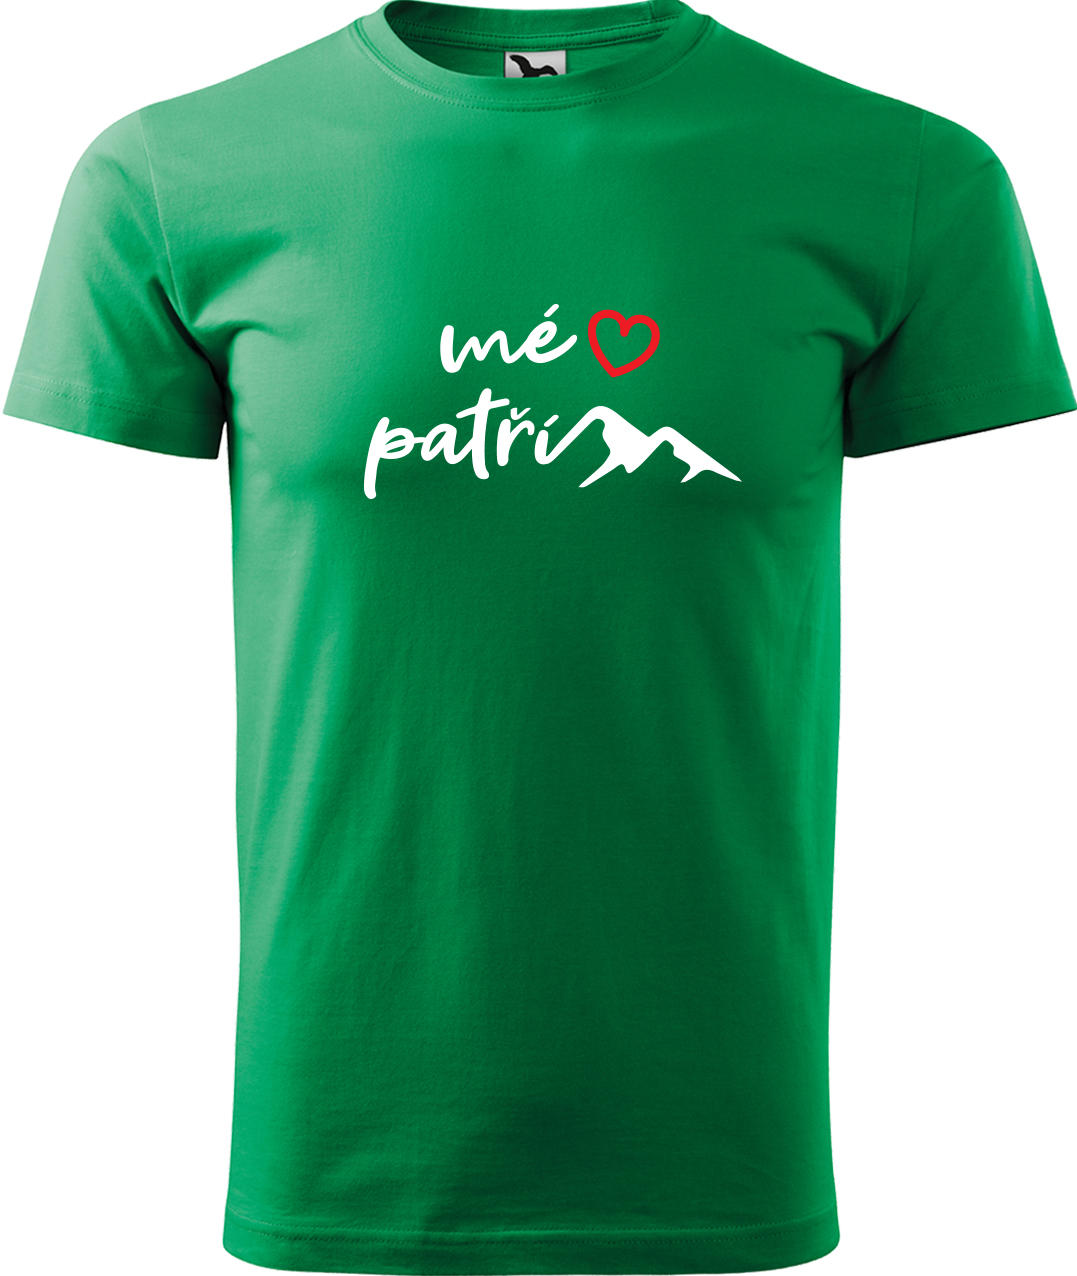 Pánské tričko na hory - Mé srdce patří horám Velikost: S, Barva: Středně zelená (16), Střih: pánský